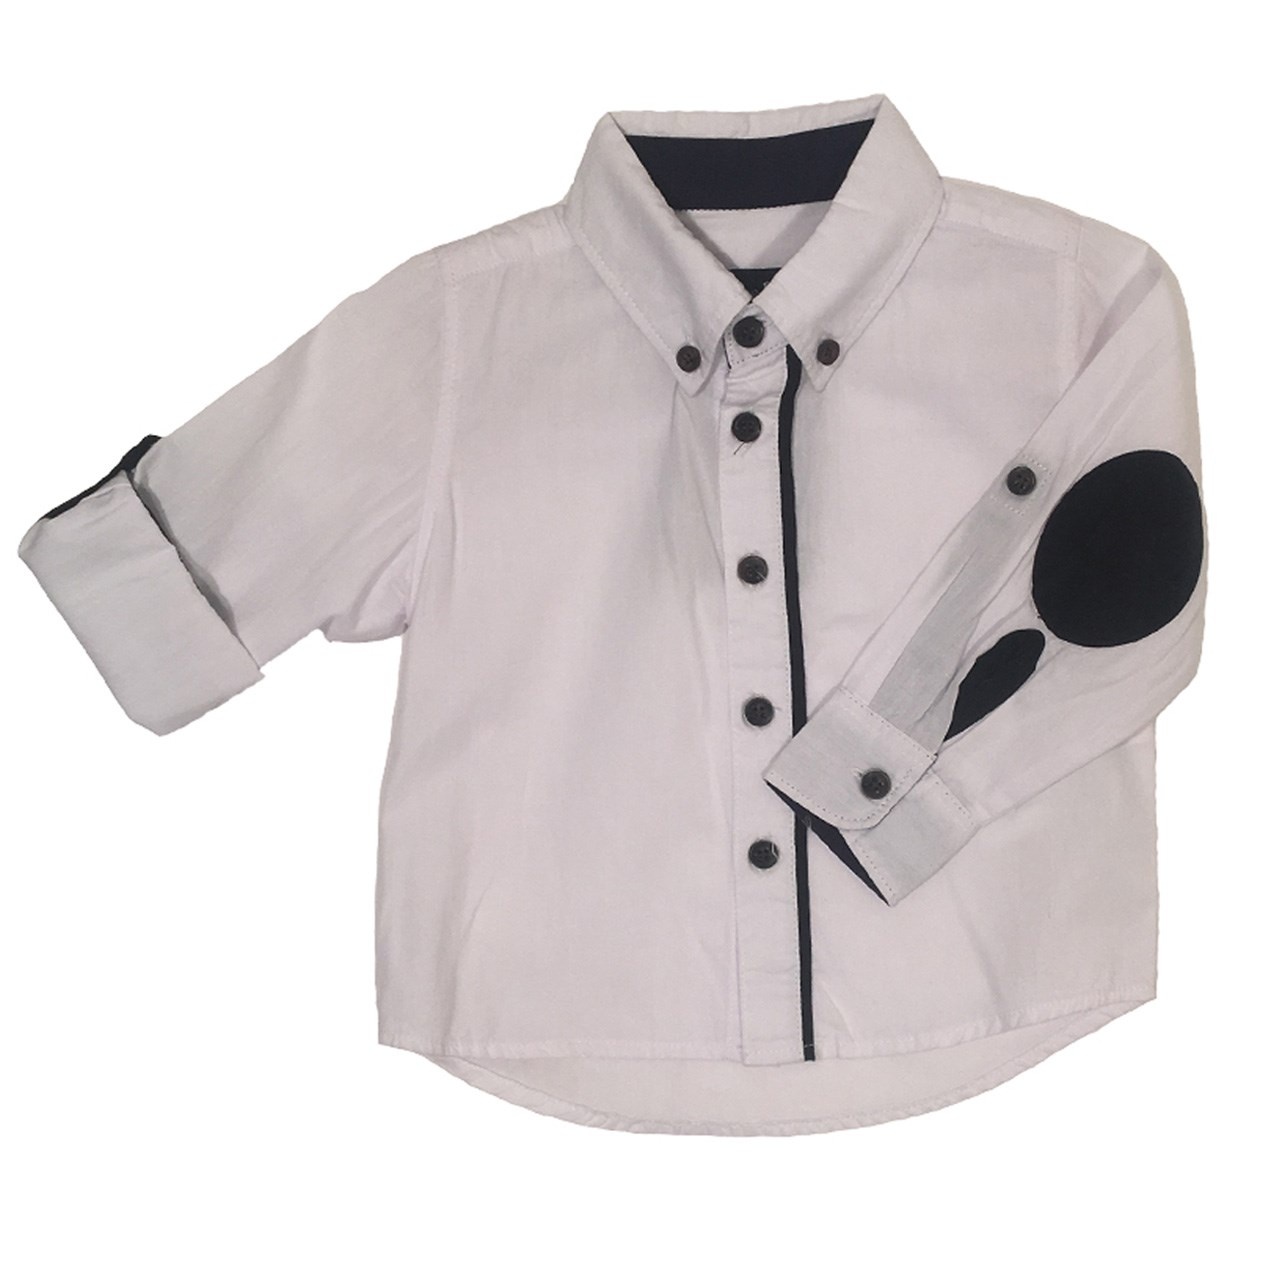 پیراهن پسرانه سفید ماسیمو مدل 027